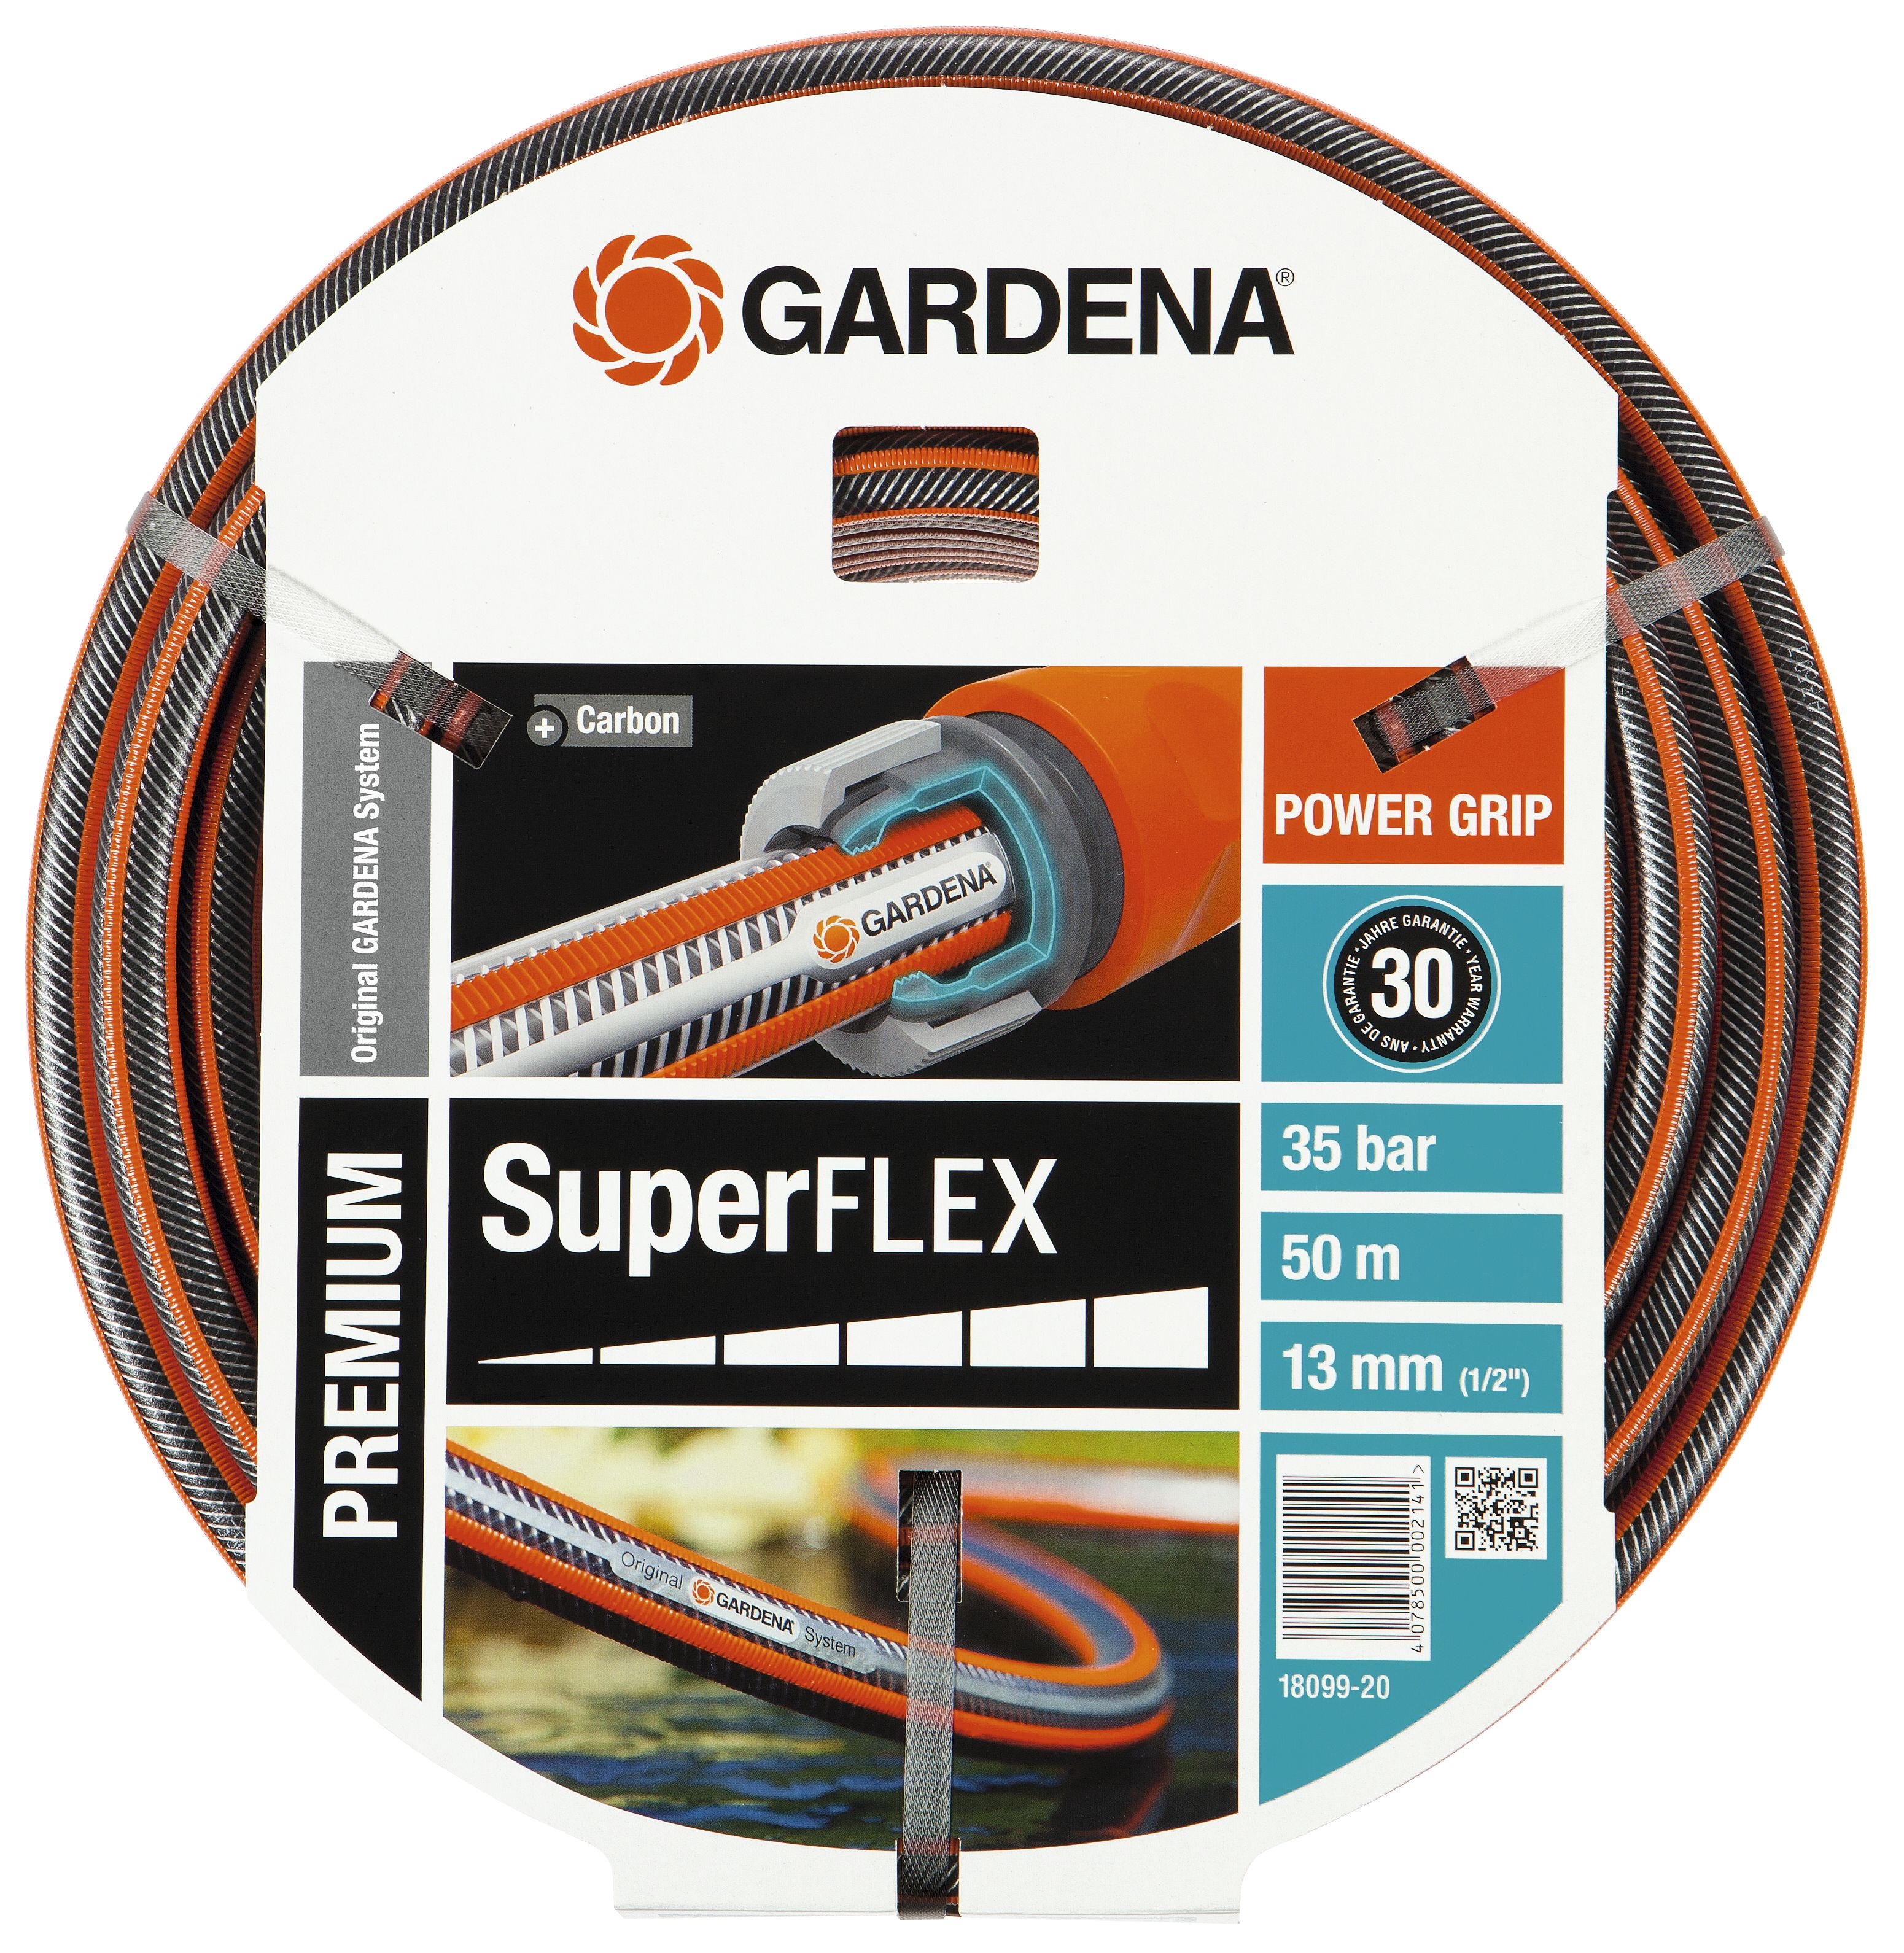 Afbeelding Gardena Tuinslang Premium SuperFlex Ø 13 mm 50 Meter door Haxo.nl